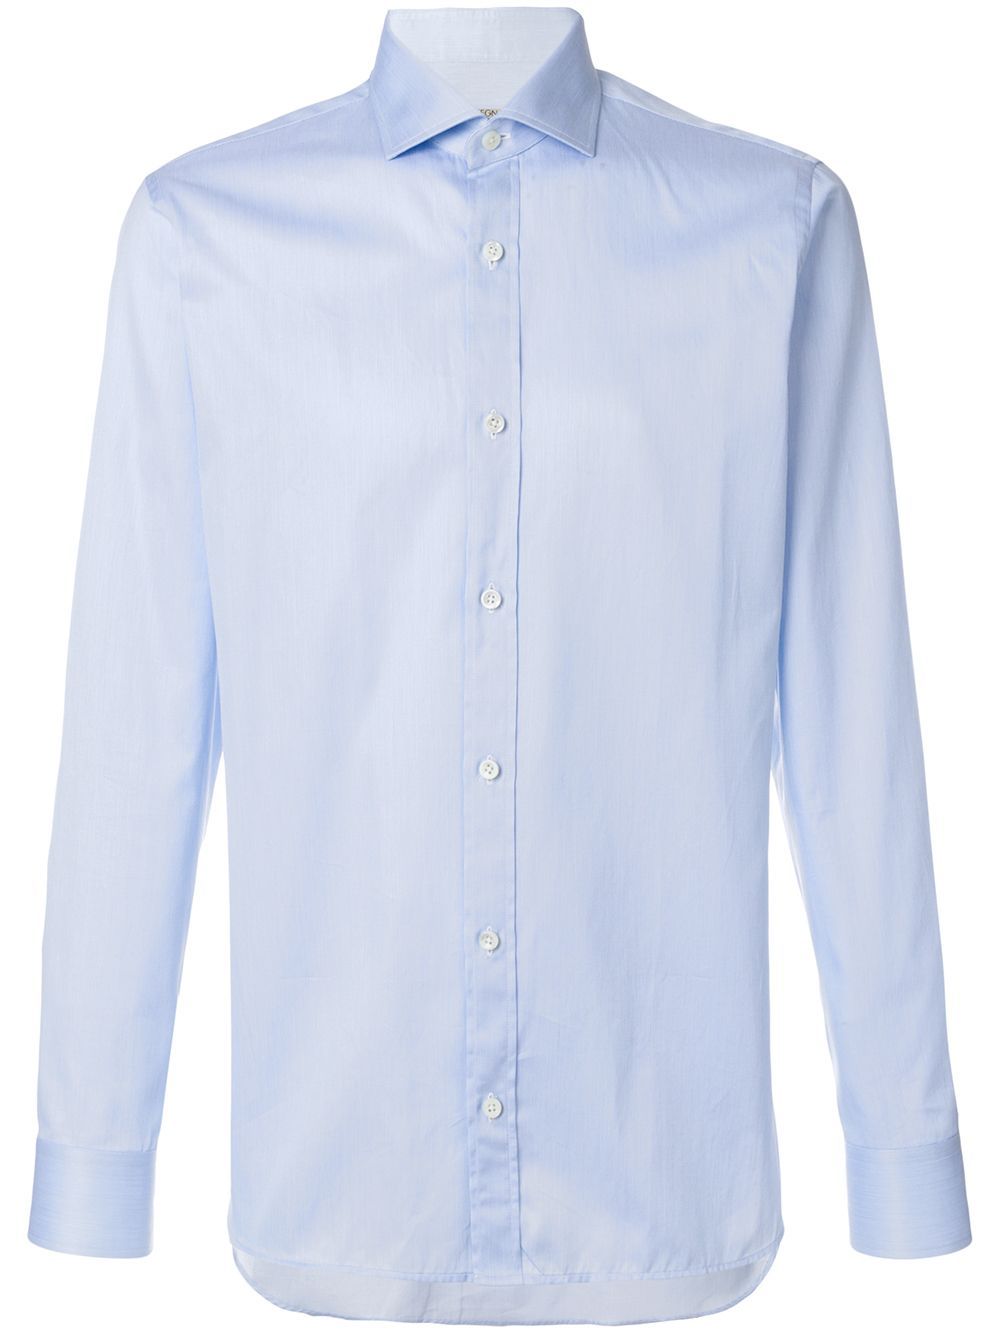 Z Zegna slim fit shirt - Blue | FarFetch US